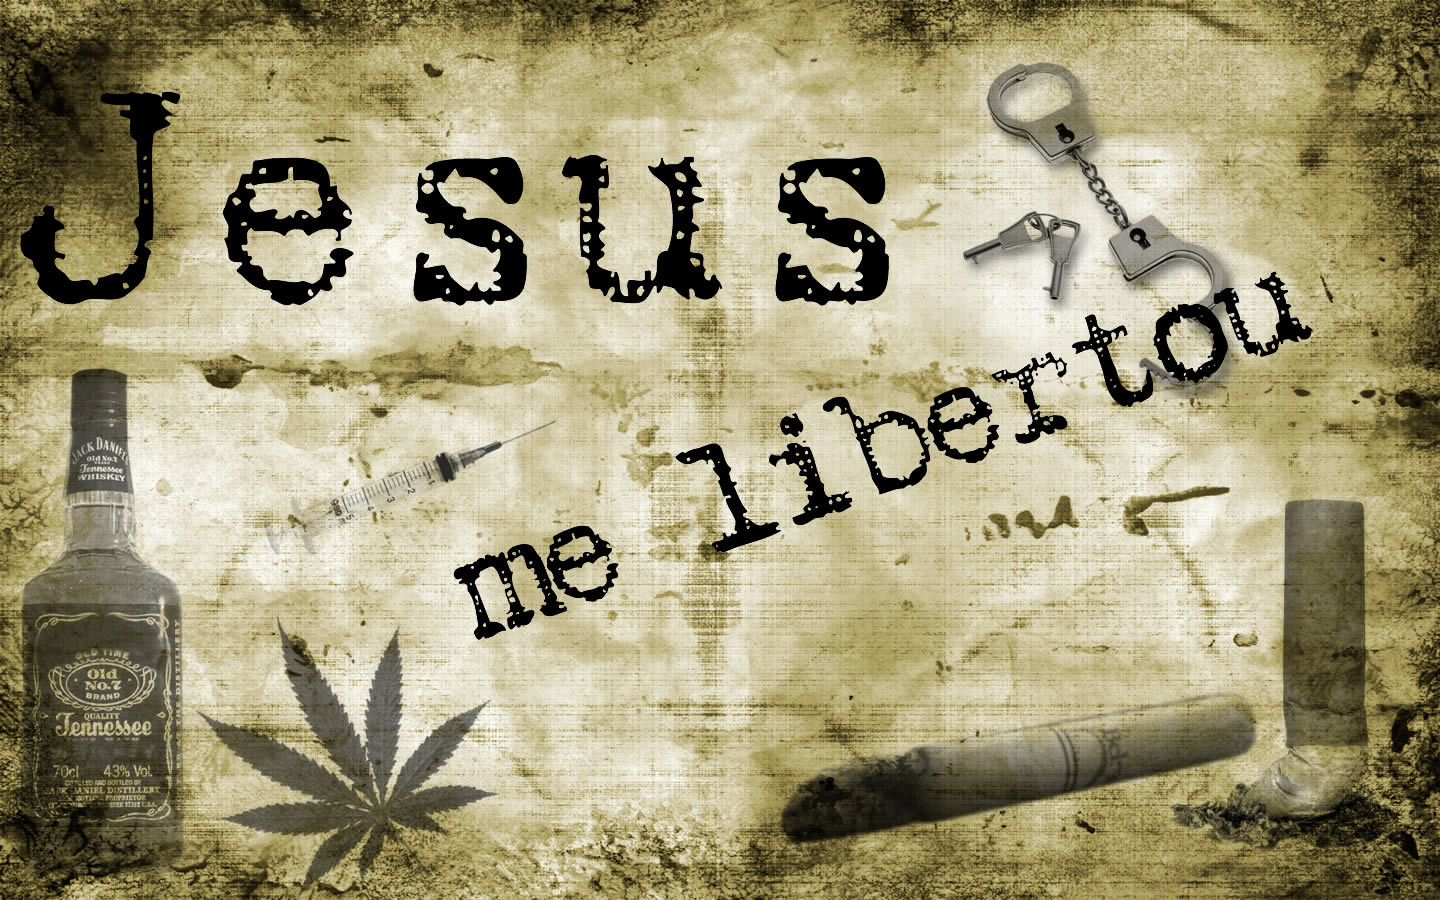 2ªIPR: Papel de Parede: Jesus me libertou